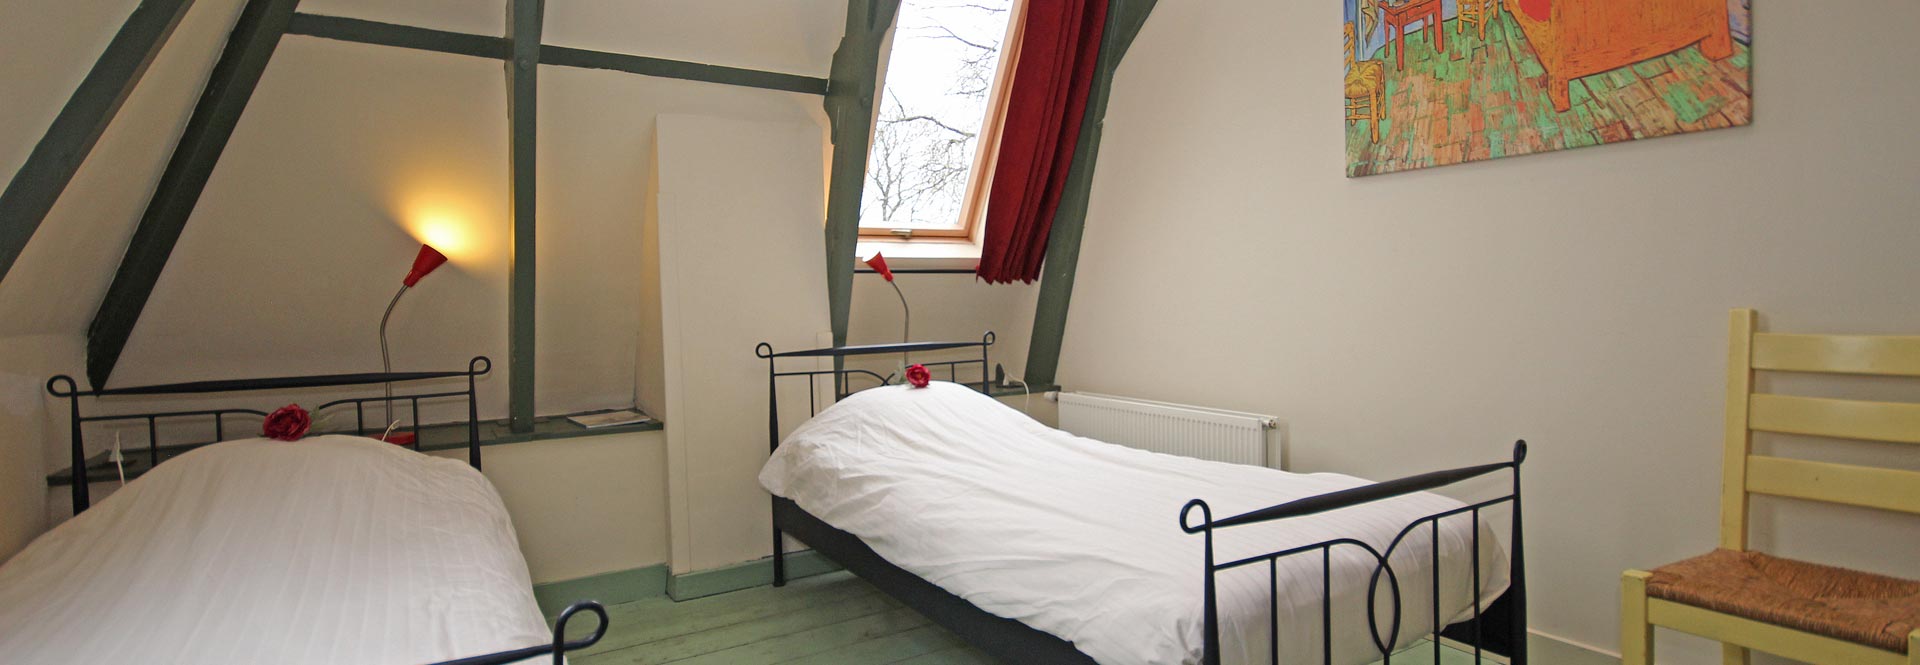 Van Gogh, slaapkamer met badkamer en-suite